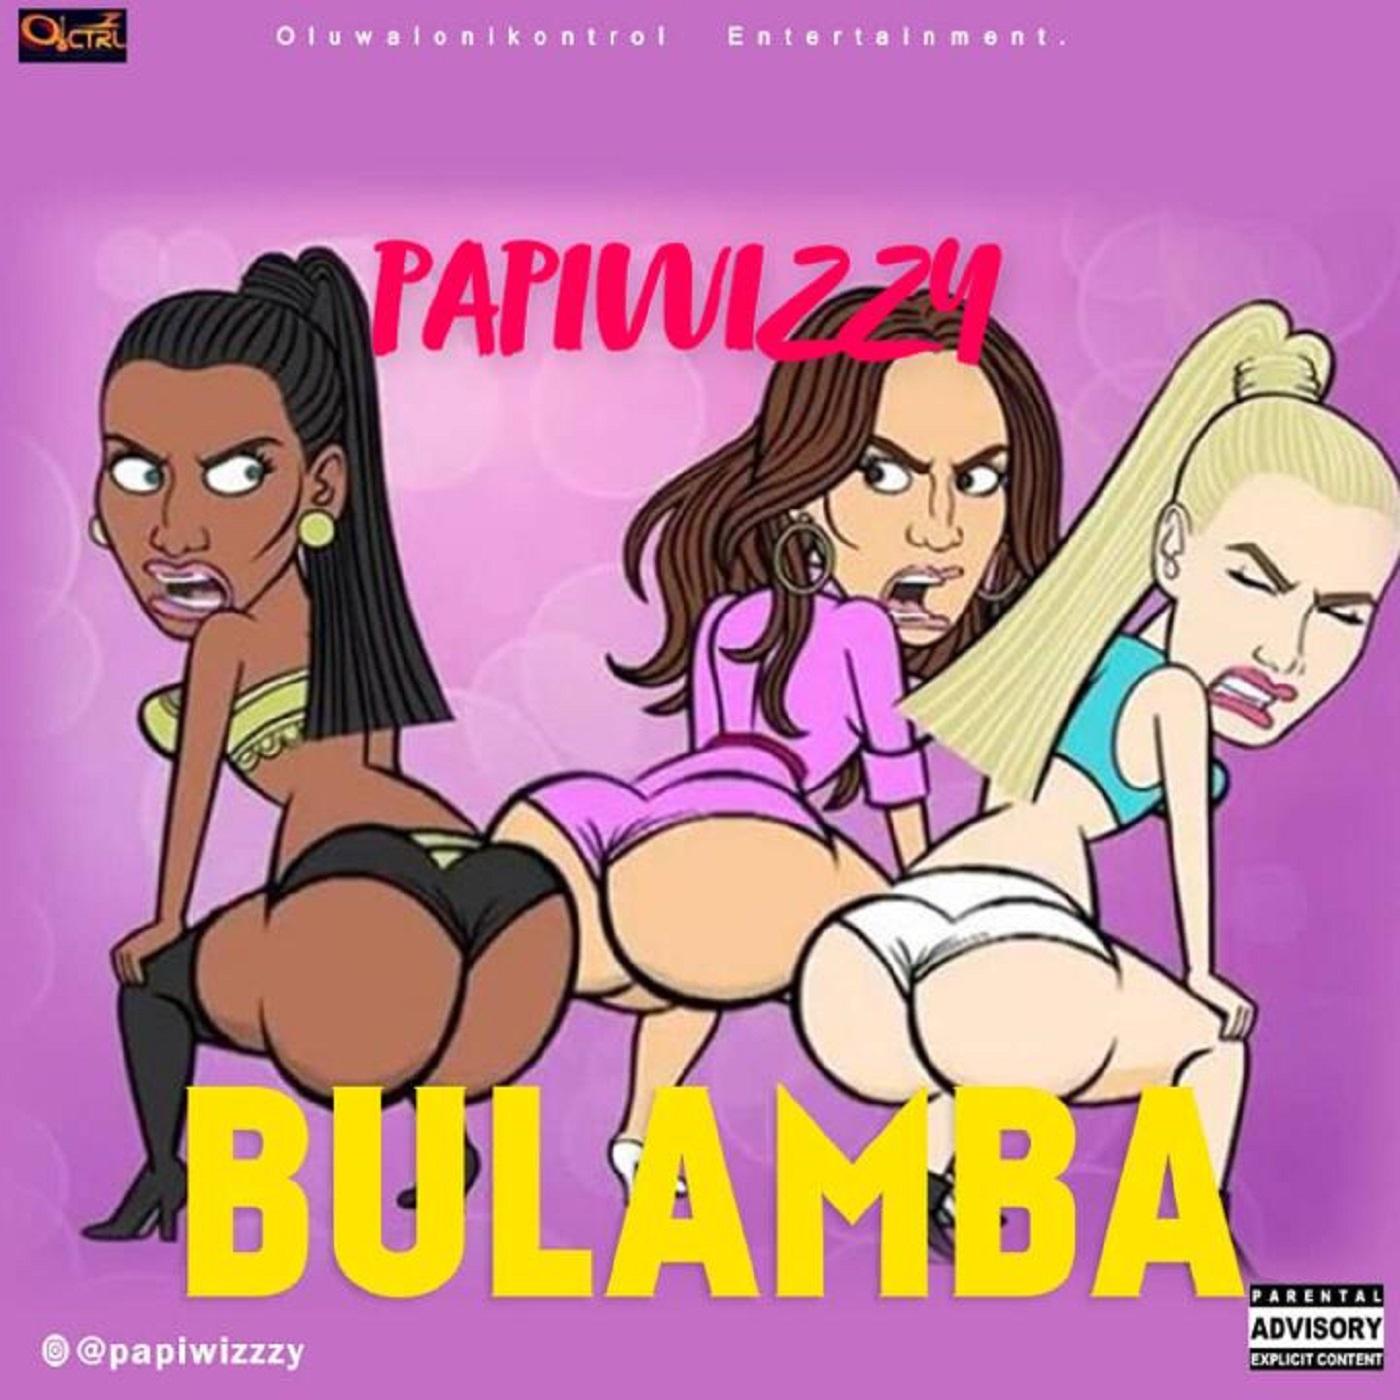 Papiwizzy - Bulamba